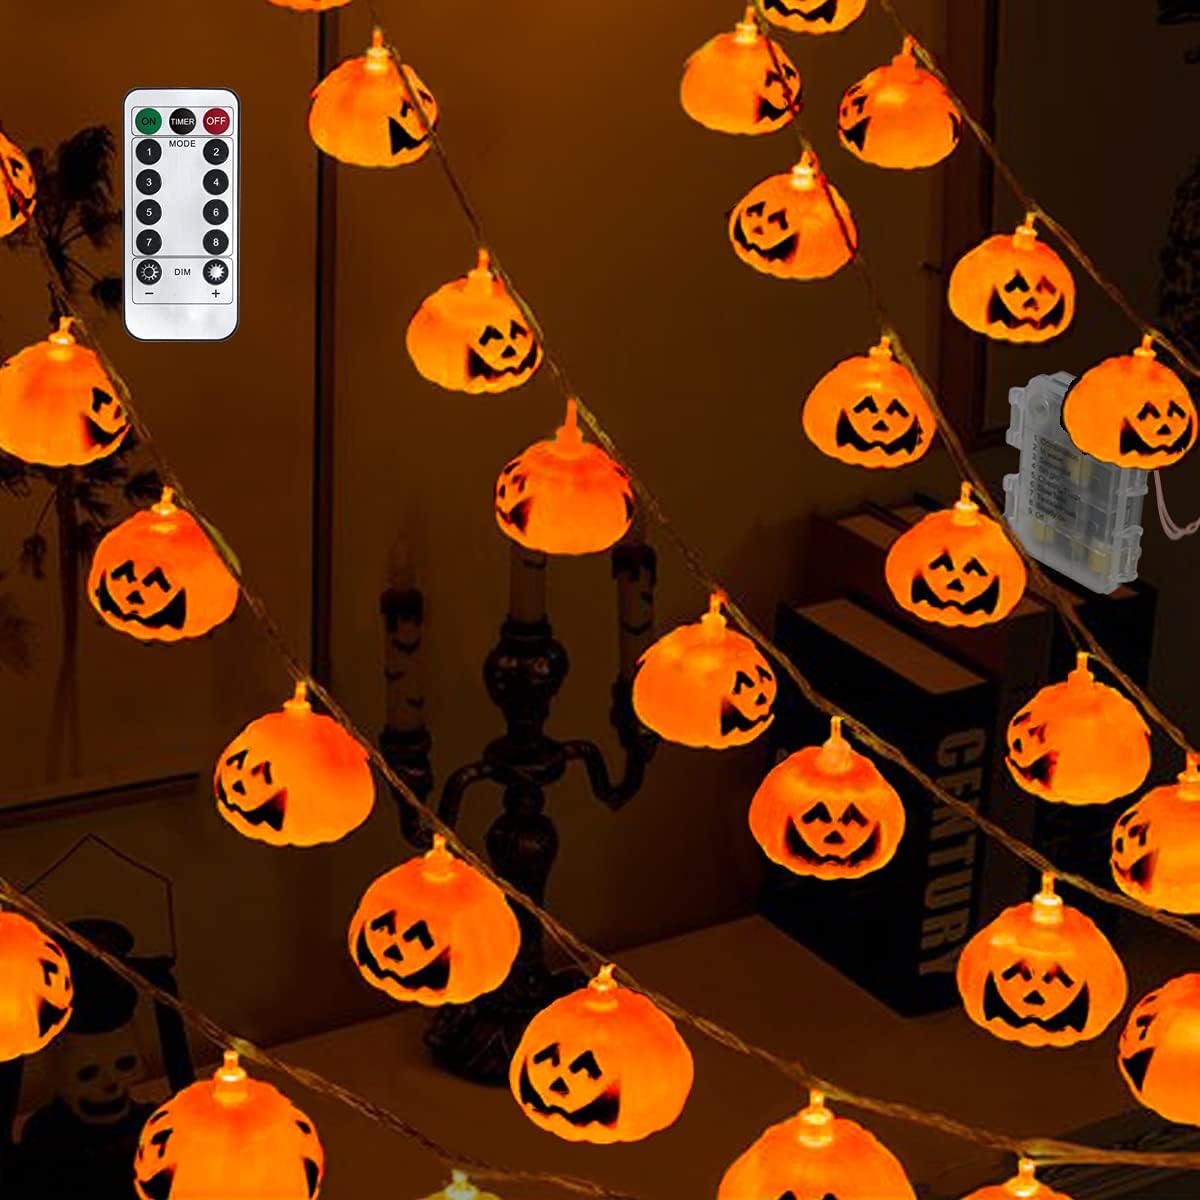 GameXcel Halloween Pumpkin Lanterns String Lights, 16.4FT 30 LEDs Jack O Lantern Lights with Remote Control